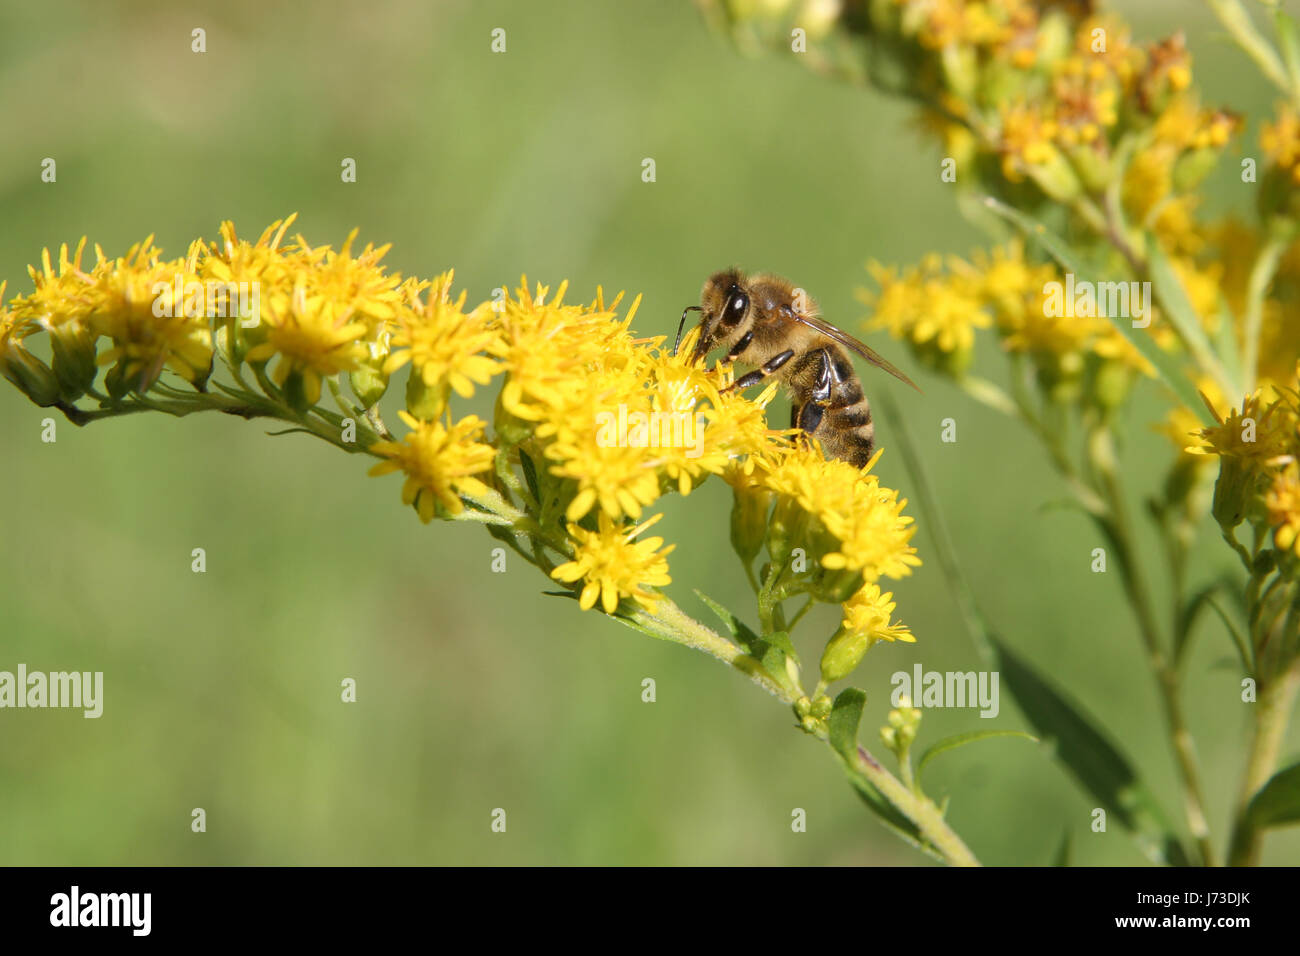 Animaux faune flore insectes mouches abeille jardin botanique quartet mouches flower Banque D'Images